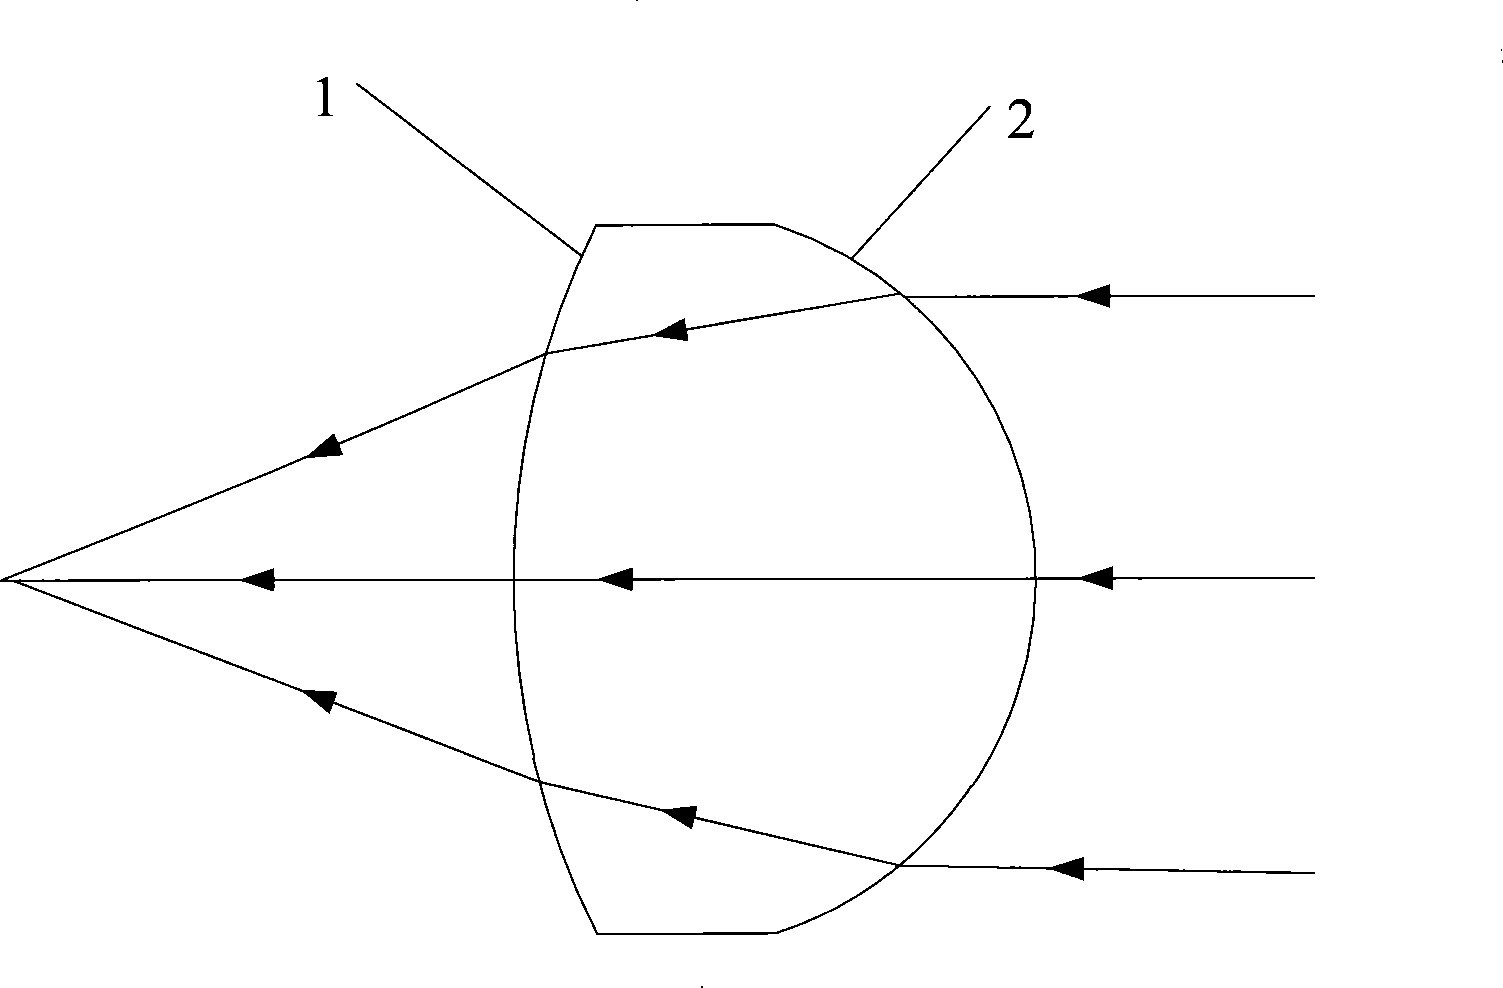 Non-spherical lens design method and non-spherical lens